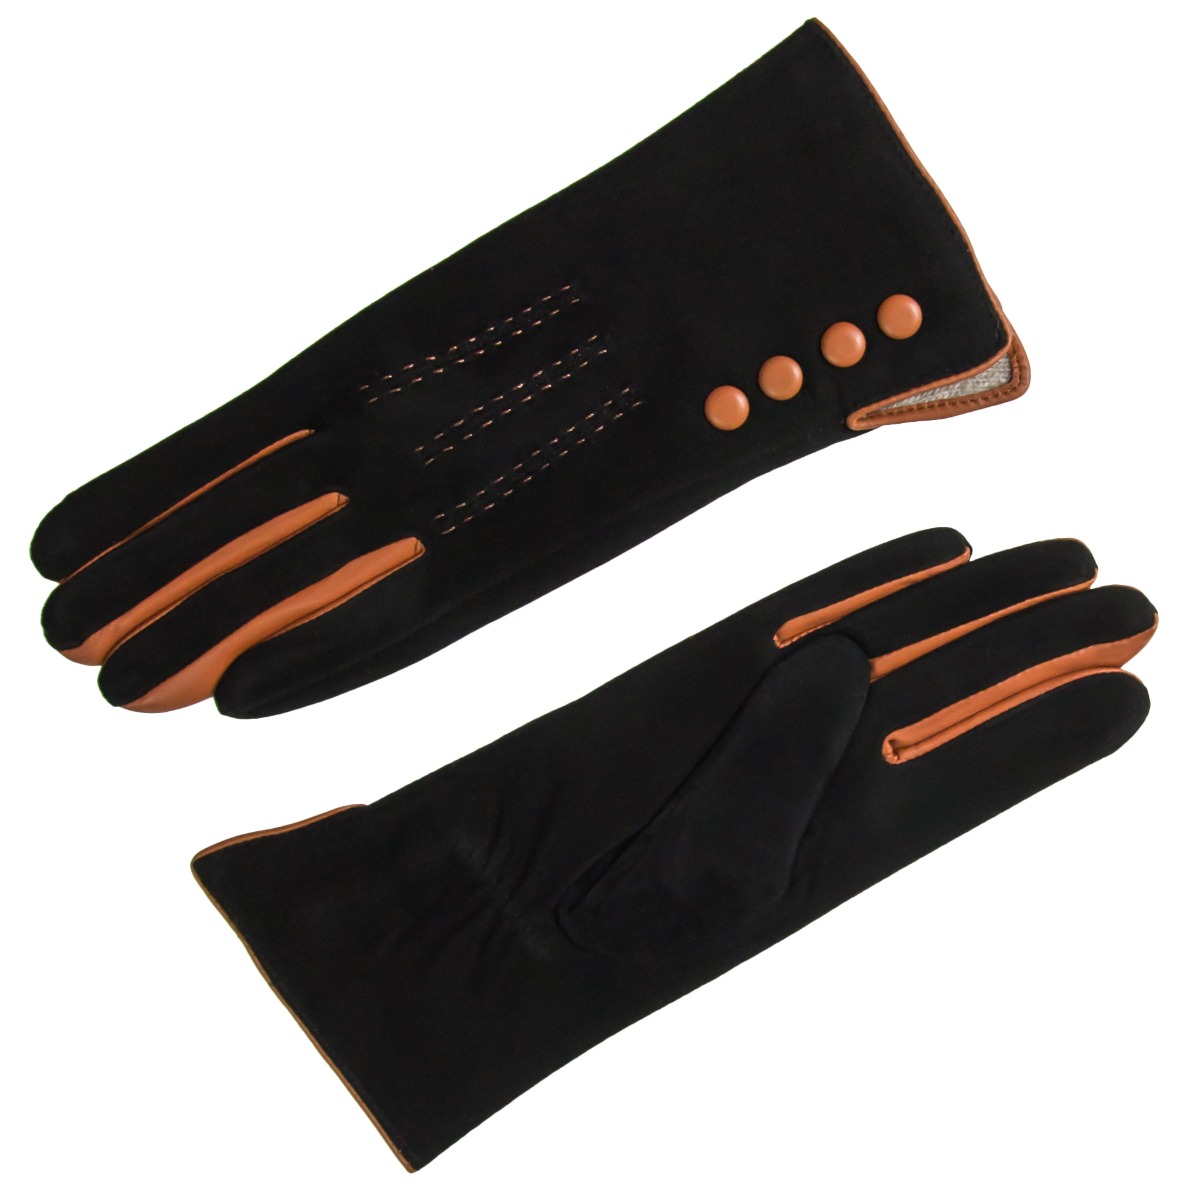 Czarno-brązowe zamszowe rękawiczki S - Allora zdjęcie 2